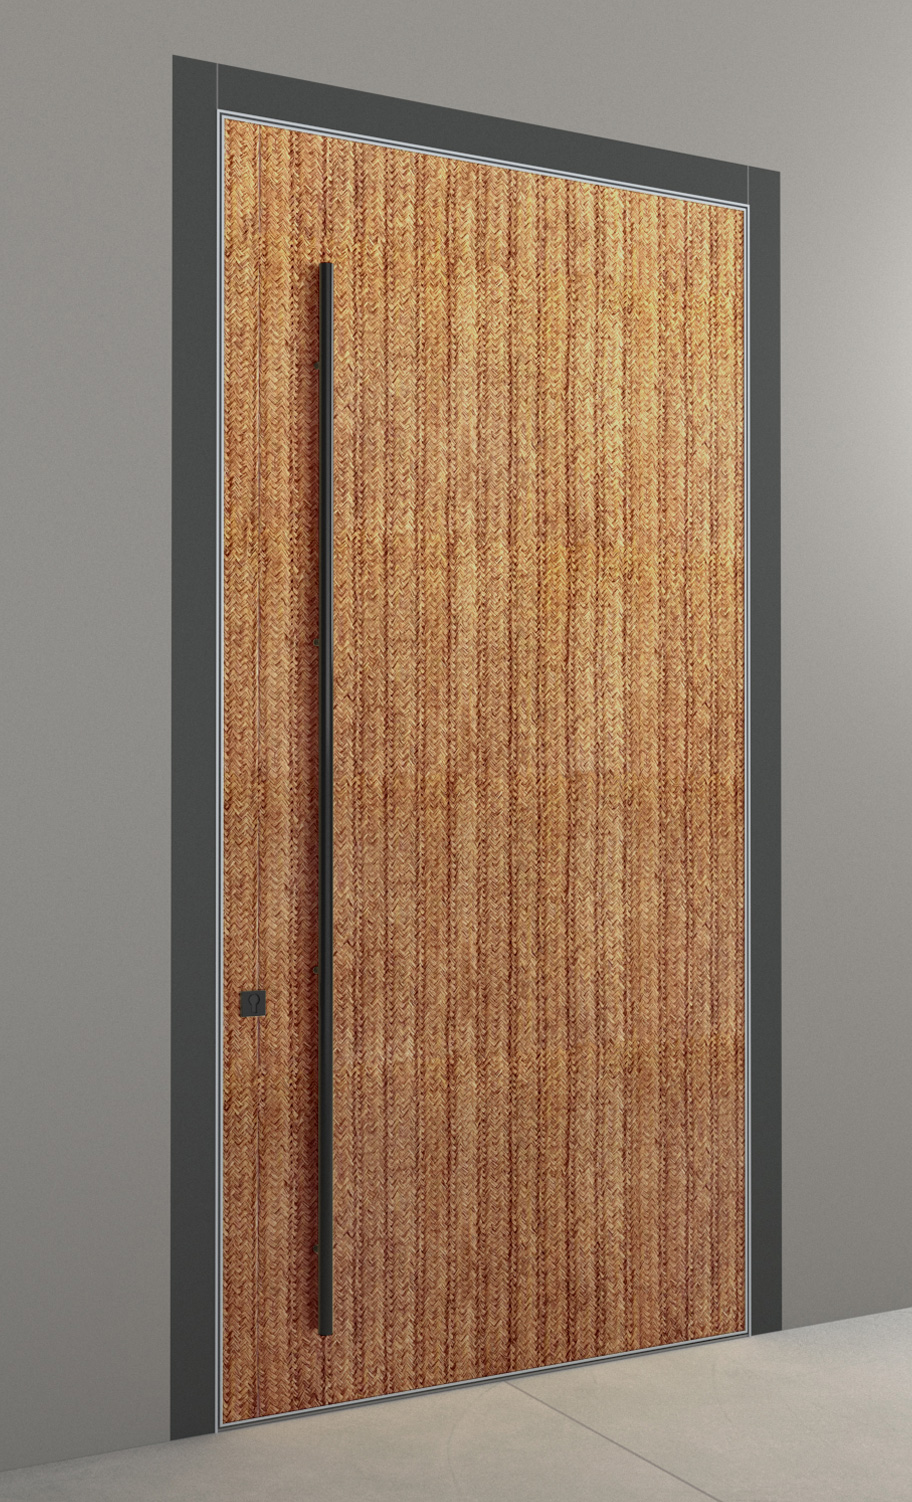 Carcoma Puertas de madera tallada